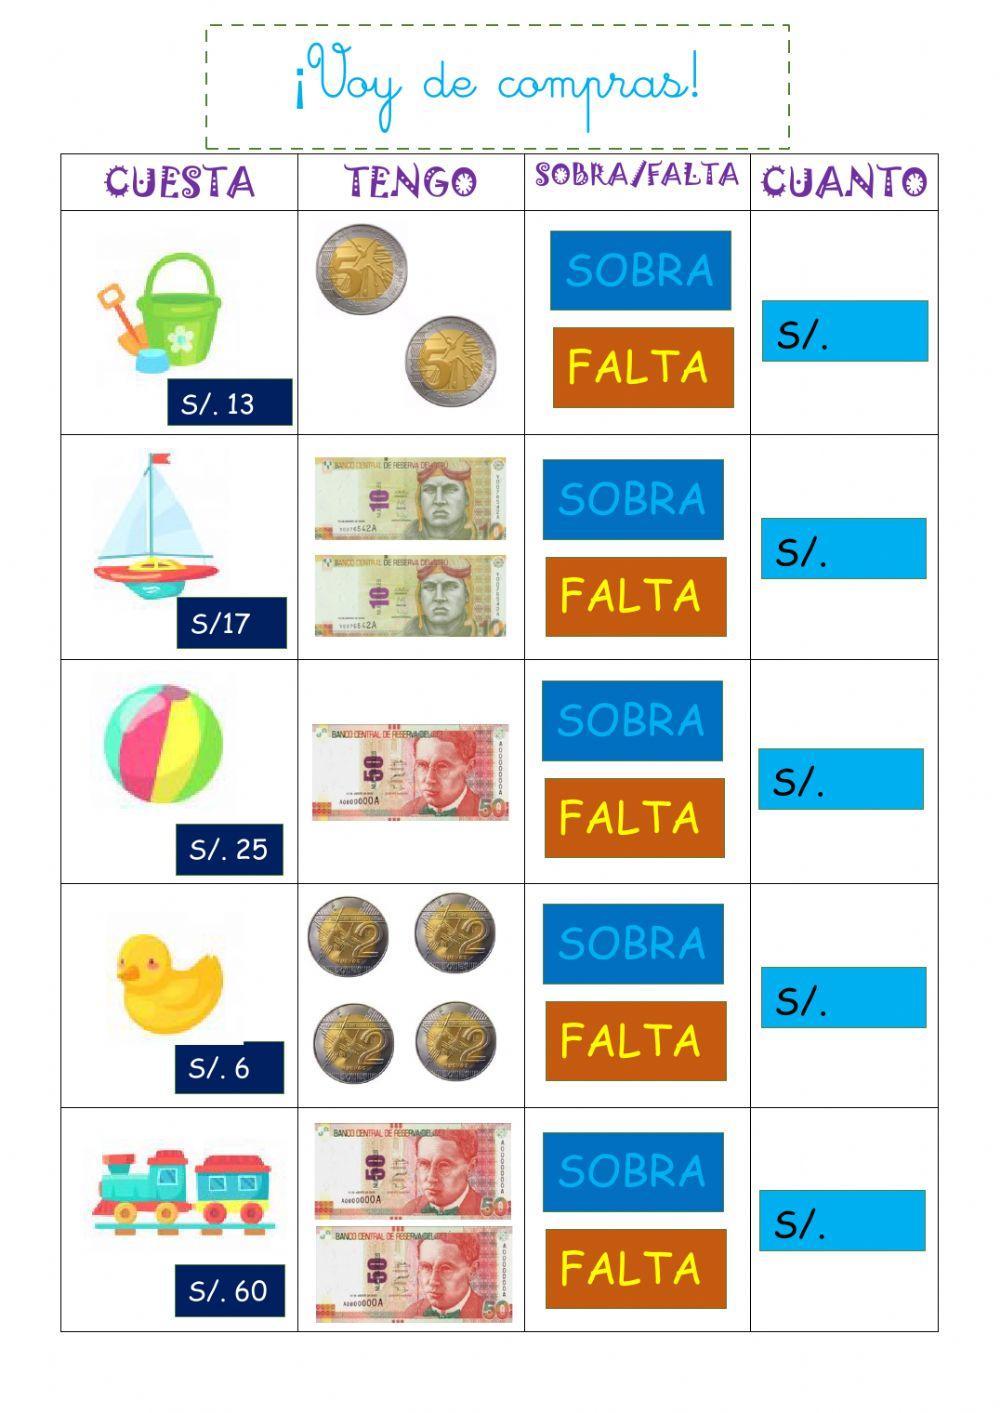 Monedas y billetes peruanos